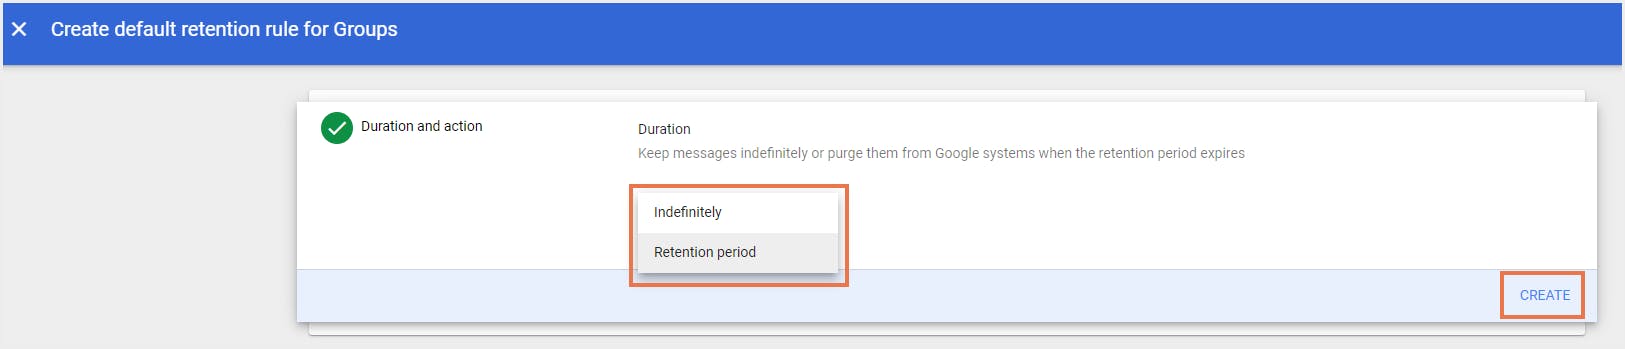 Google Groups default retention rule